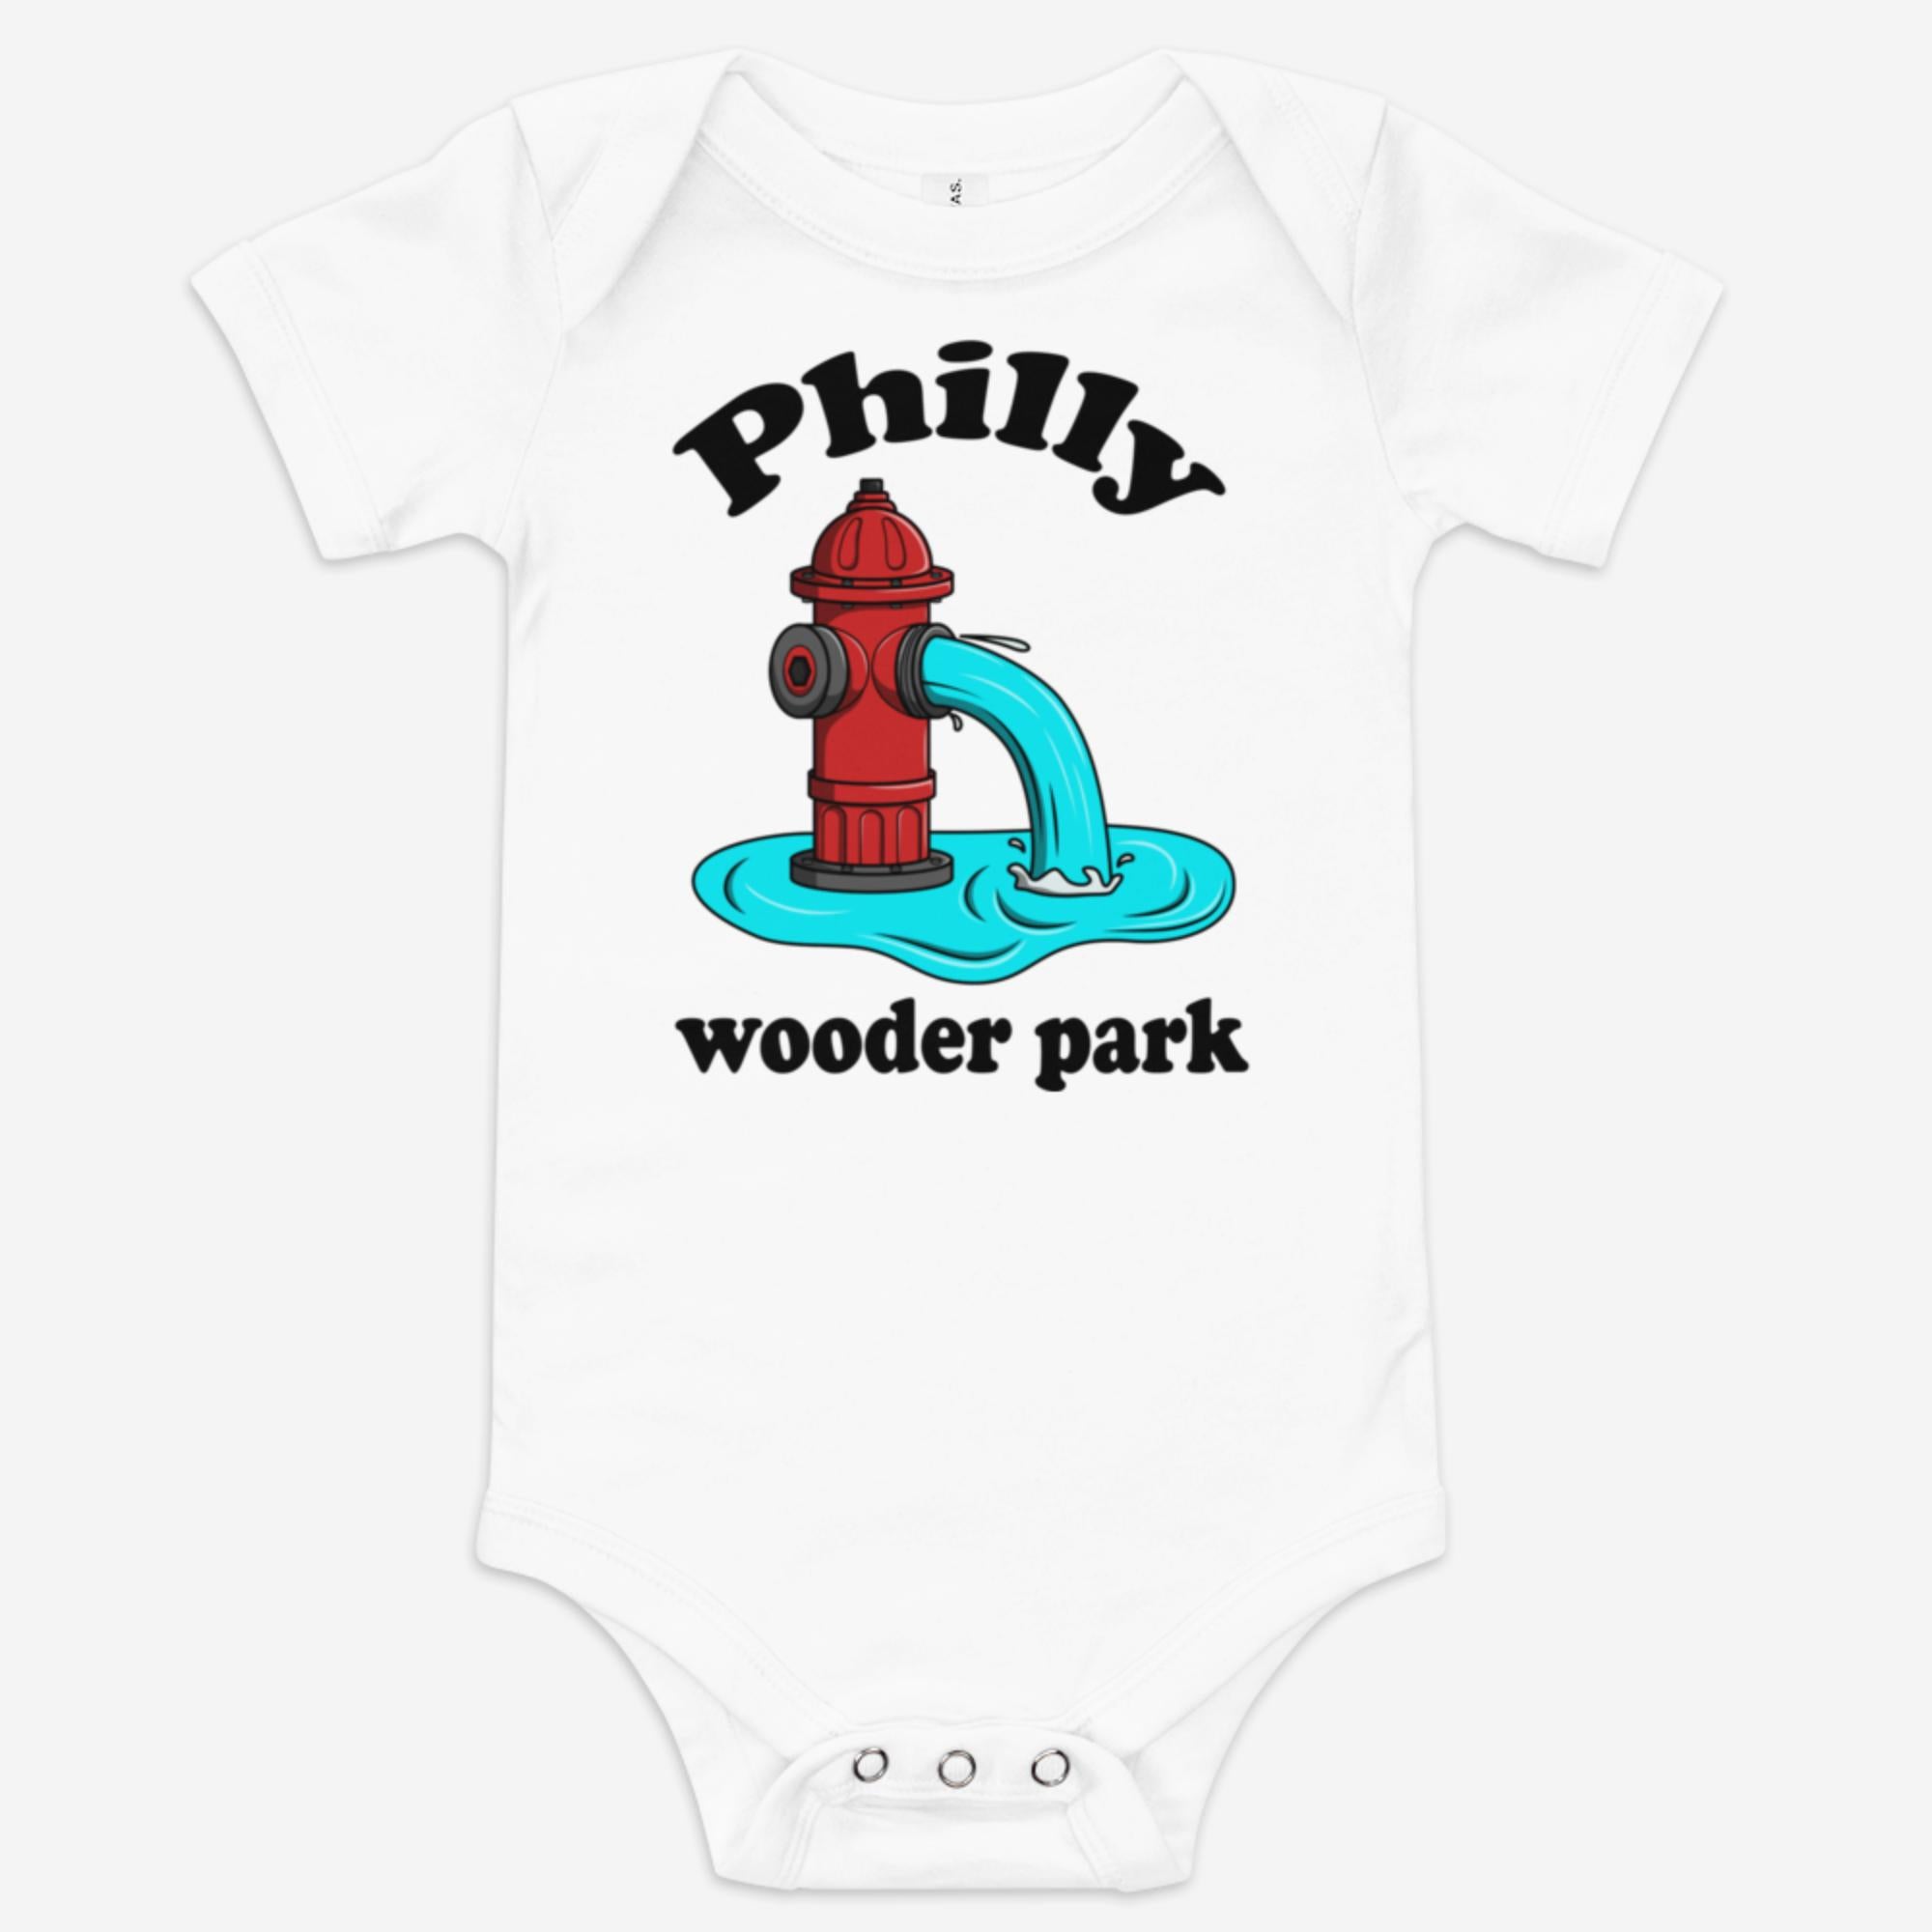 "Philly Wooder Park" Baby Onesie